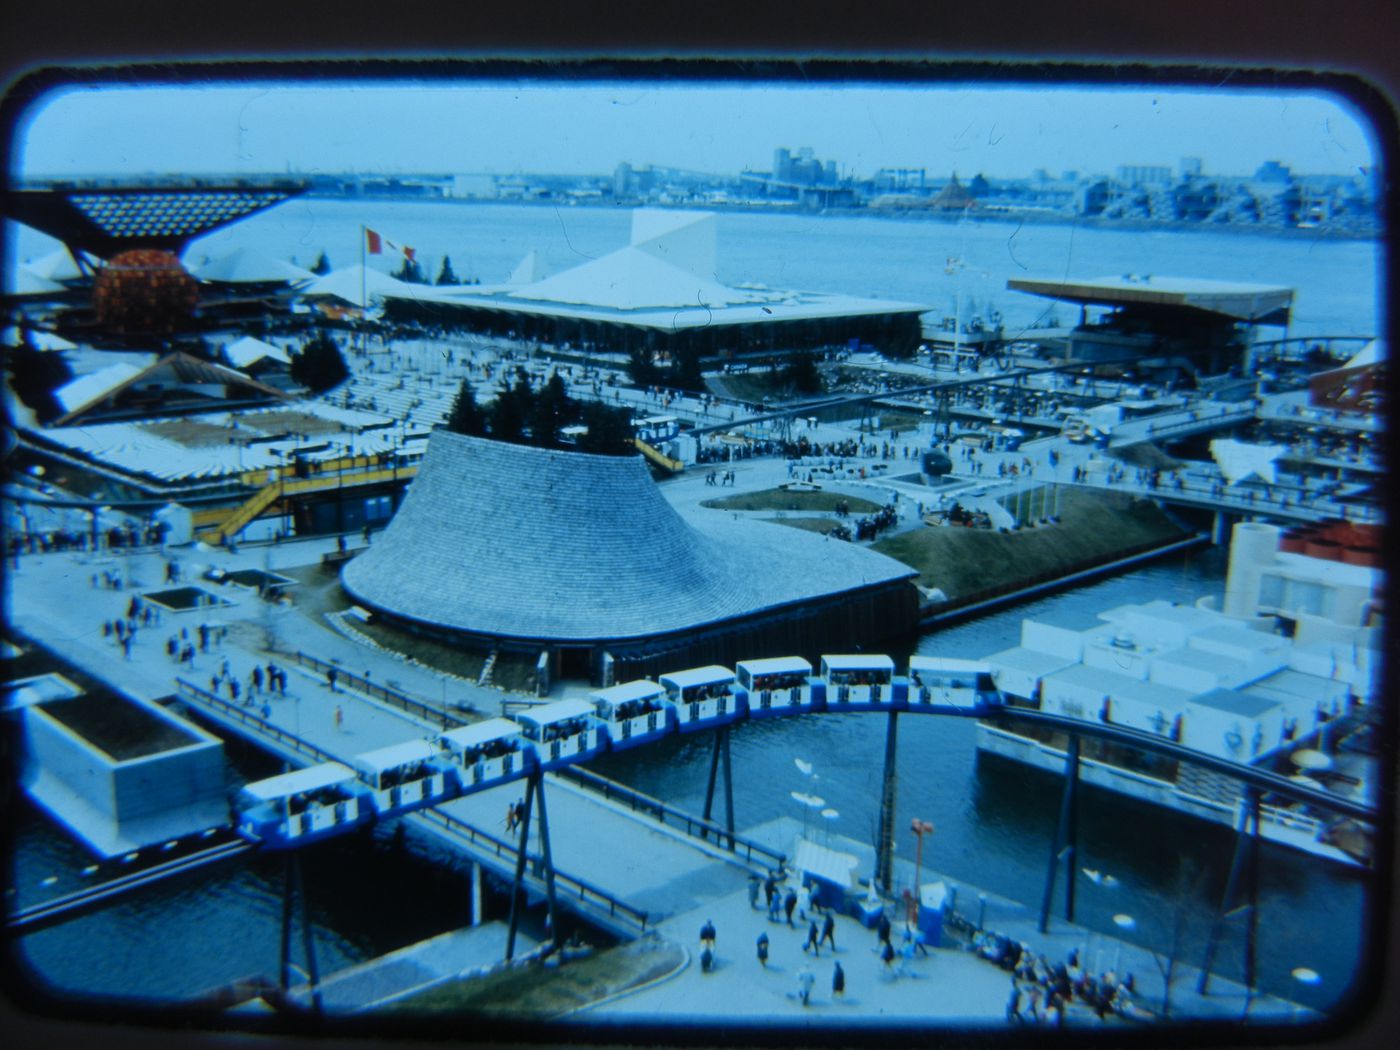 Partial view of the Île Notre-Dame site, Expo 67, Montréal, Québec